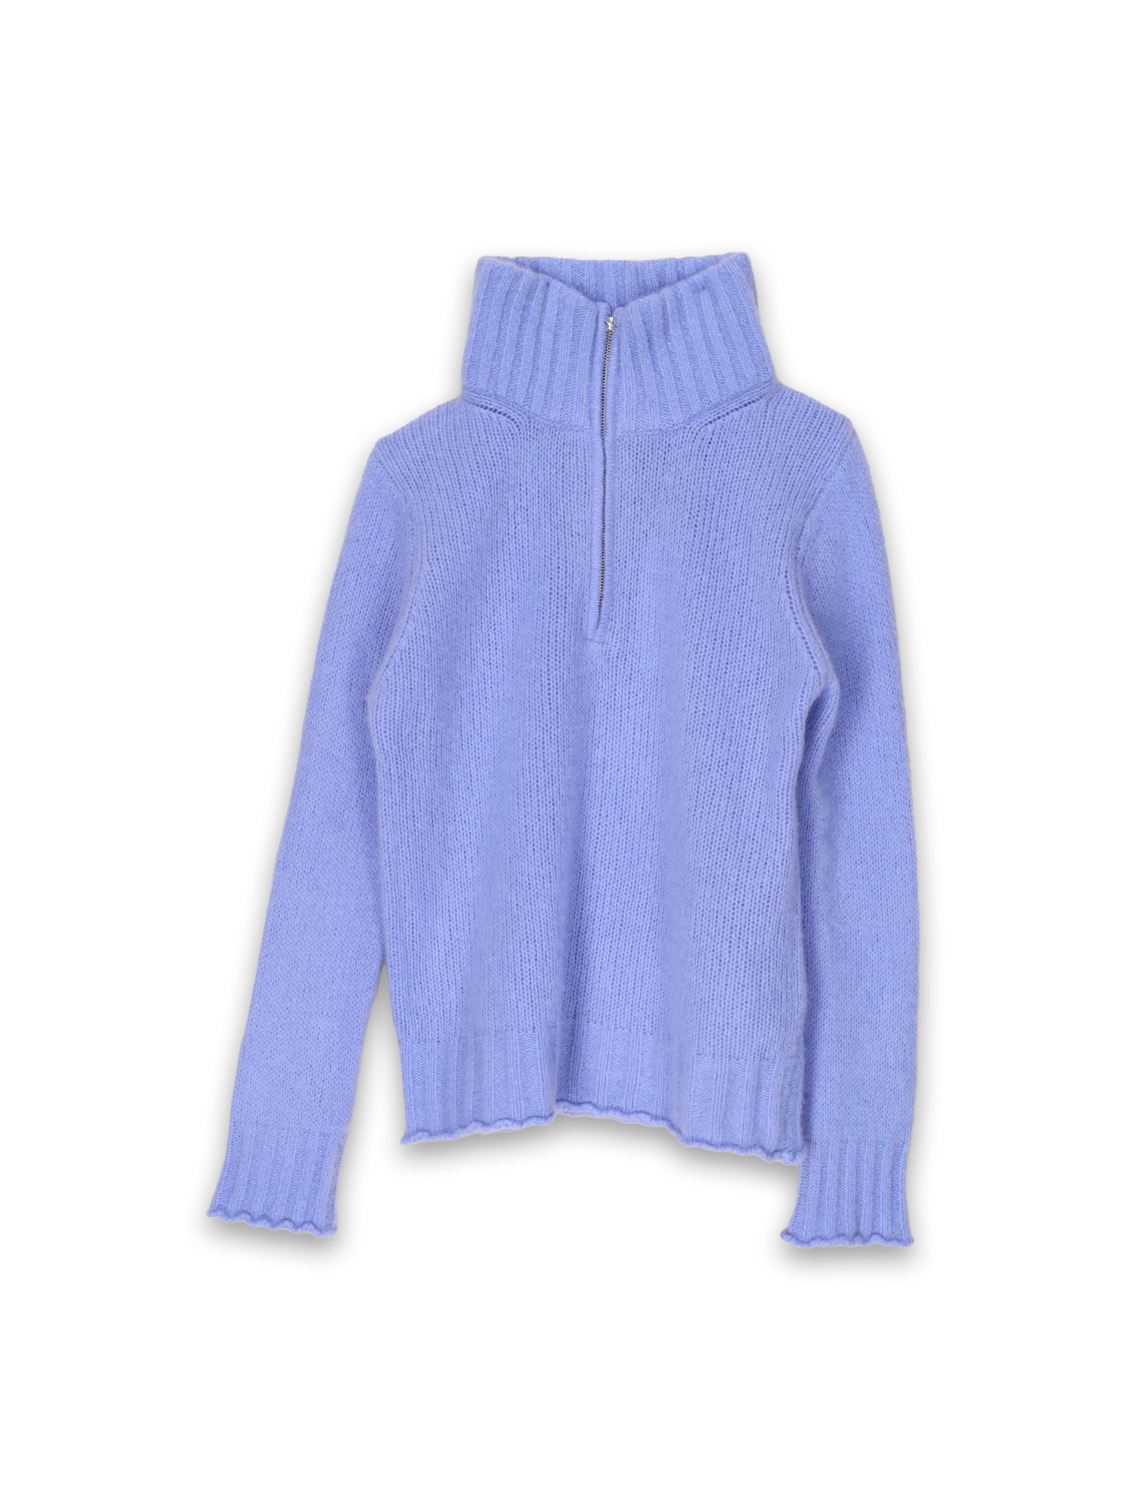 Boya Race - Lightweight knitted sweater with cashmere zipper  